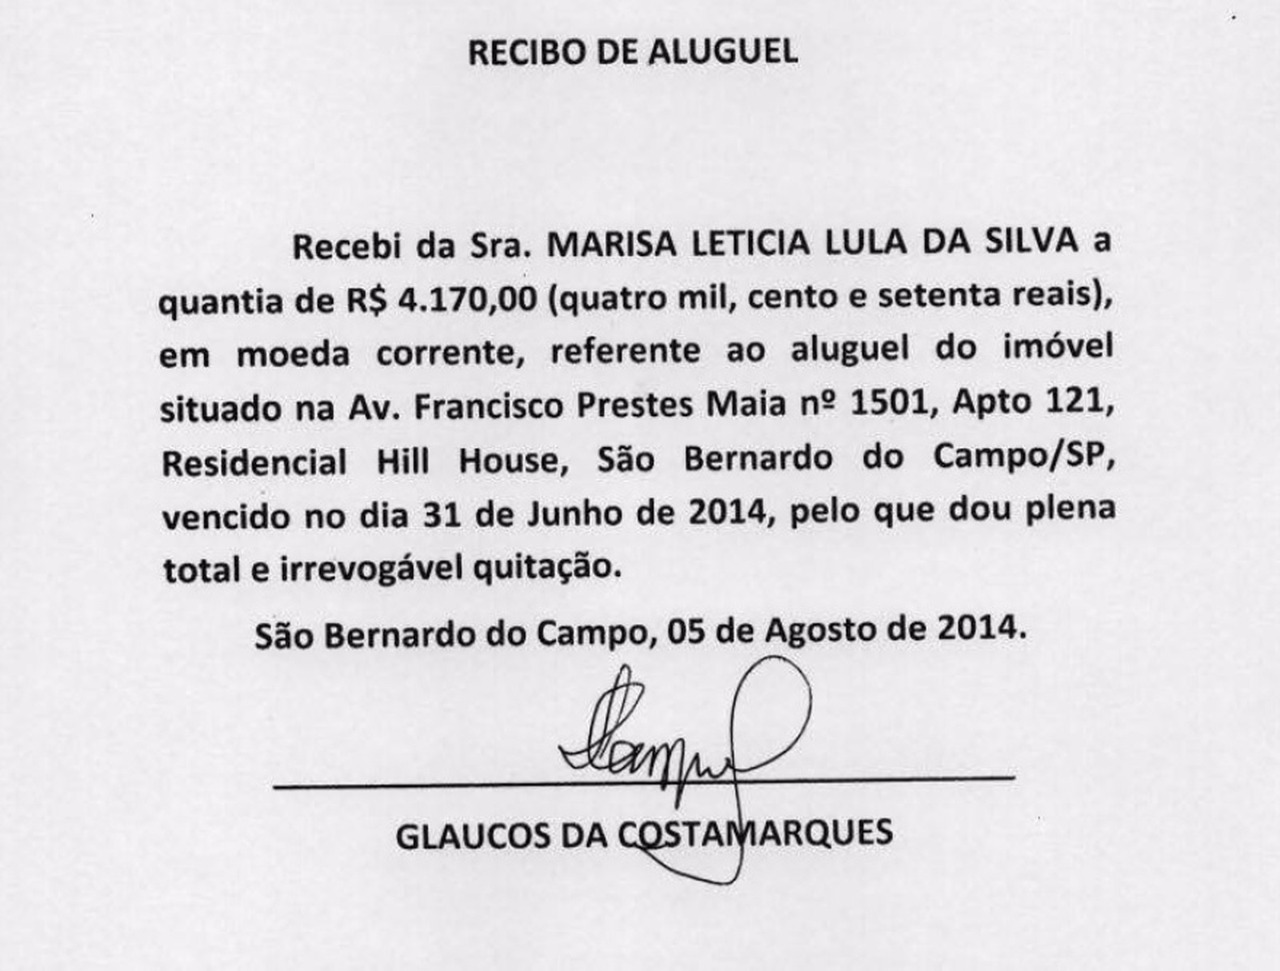  Defesa de Lula afirma ter recibos originais de aluguel de apartamento investigado na Lava Jato